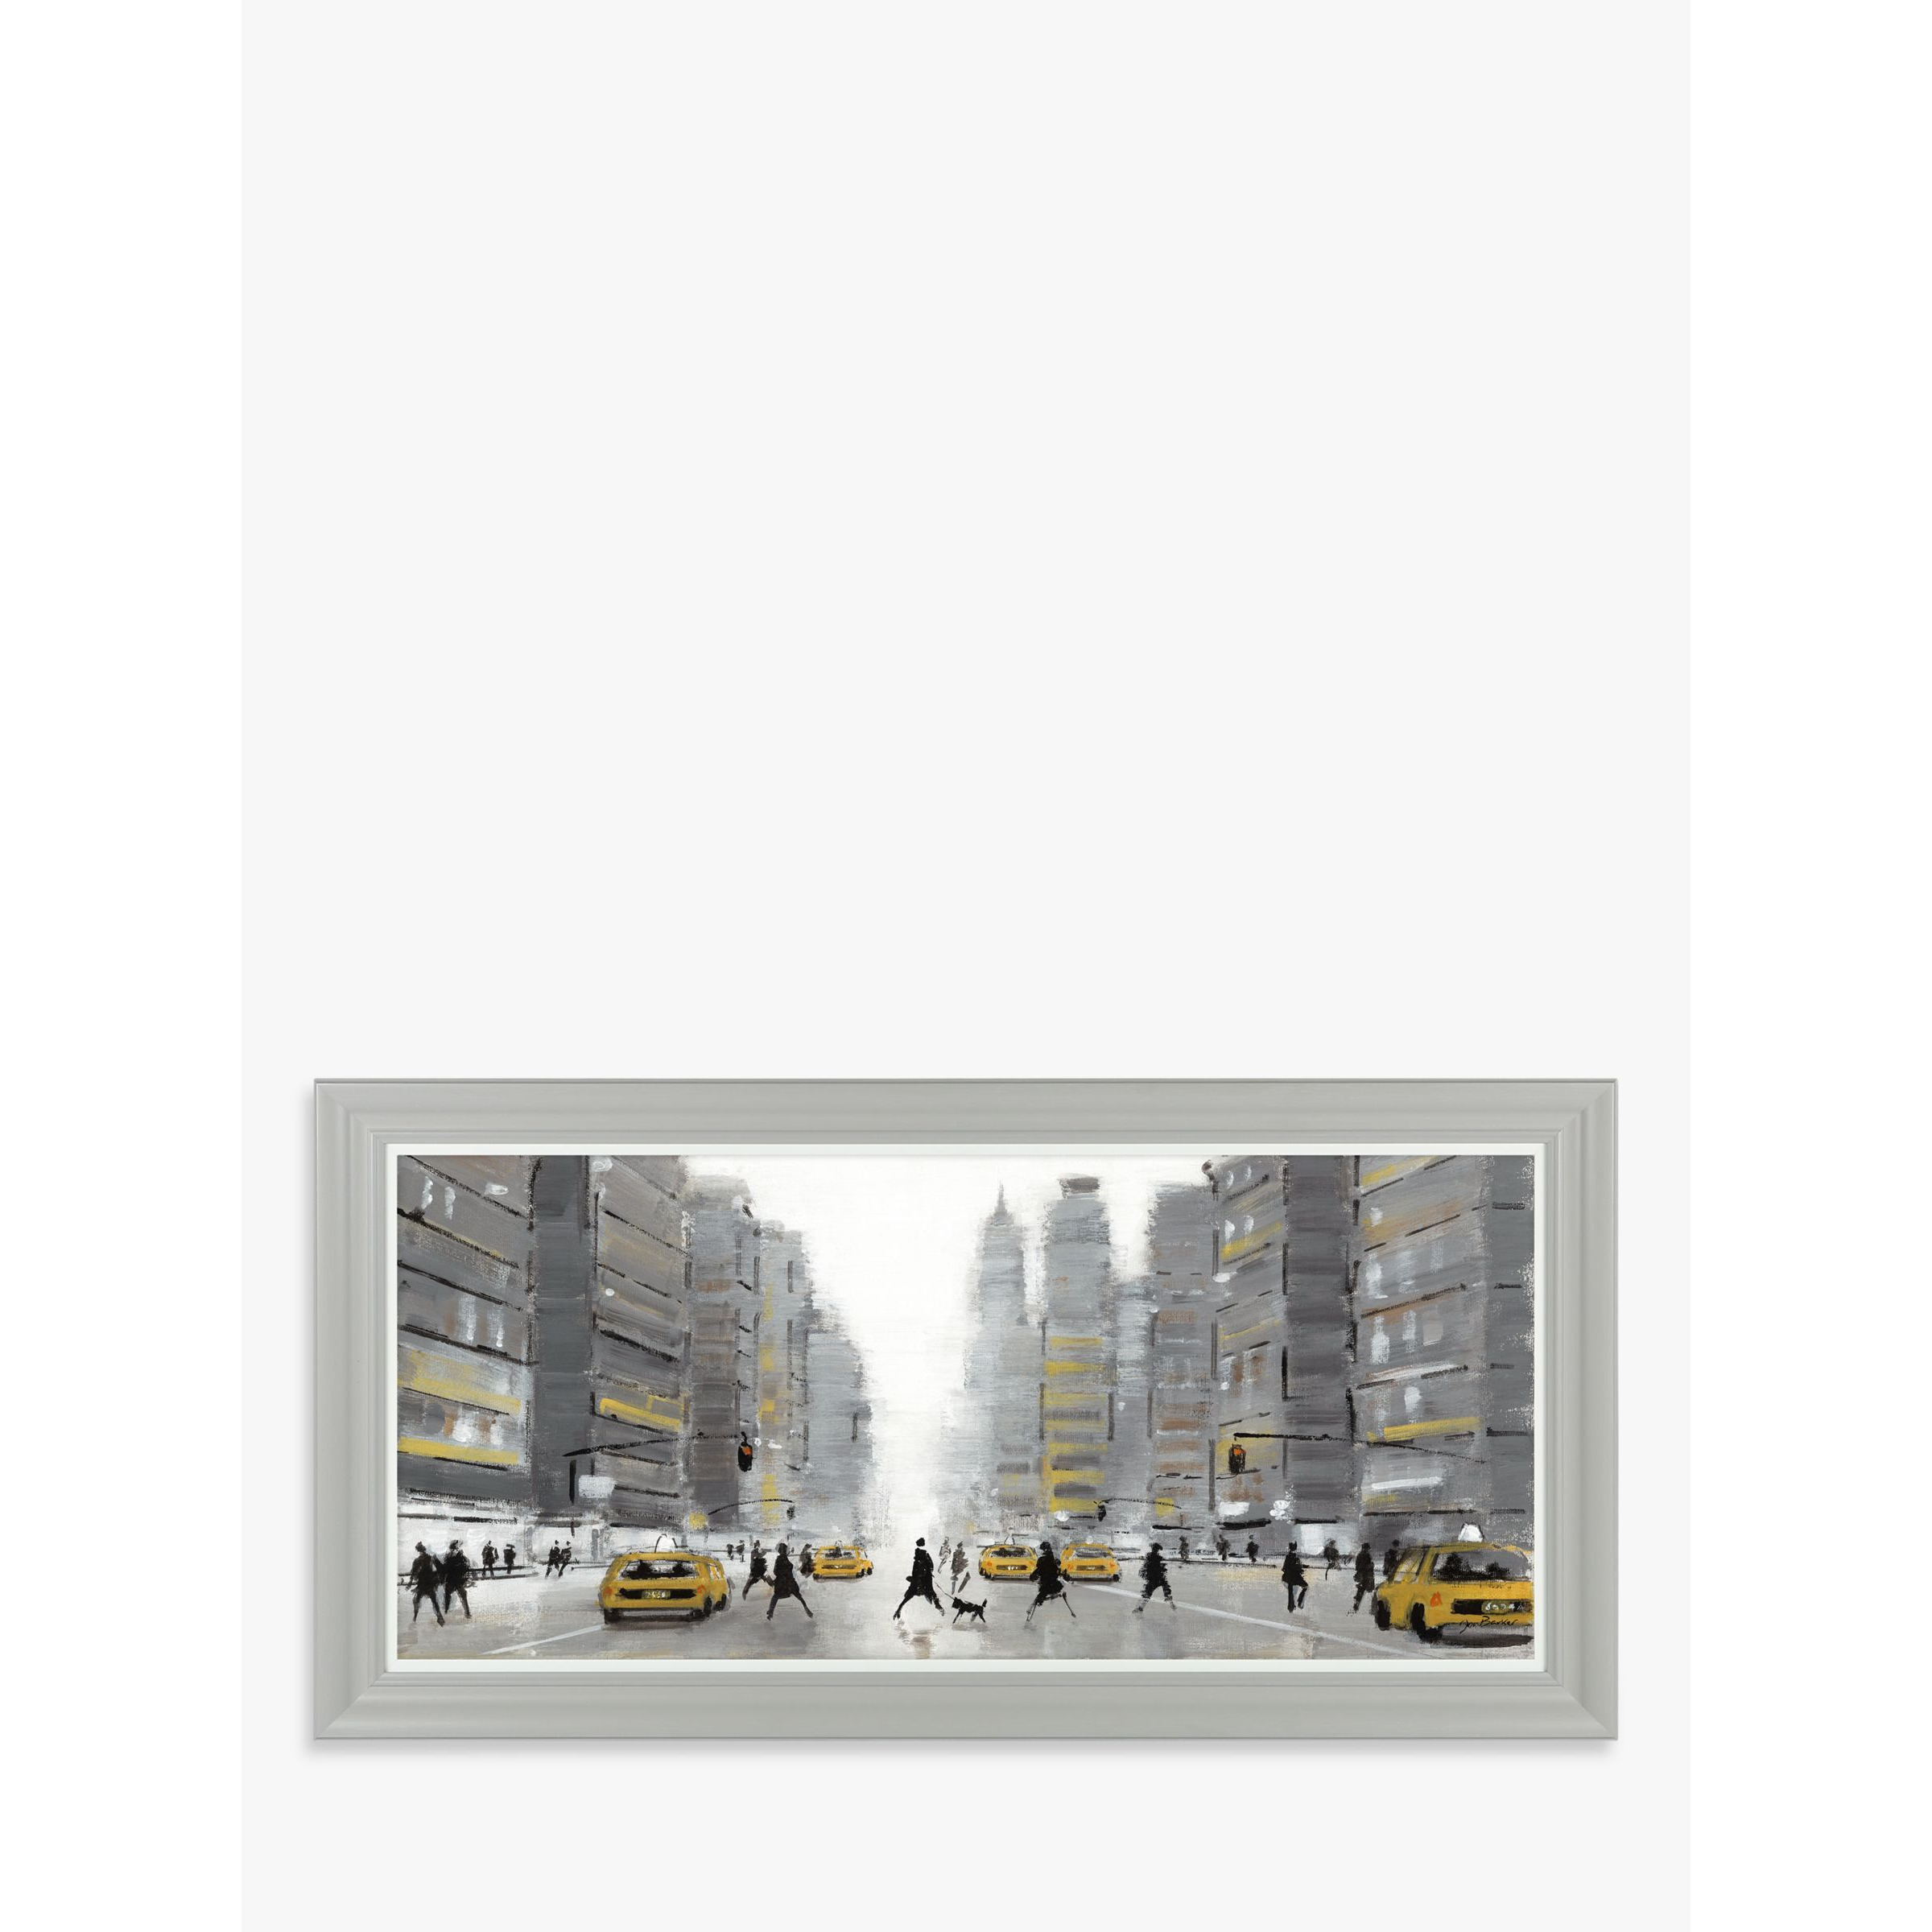 Jon Barker - New York Crossing Framed Print & Mount, 56 x 115cm, Grey/Multi - image 1